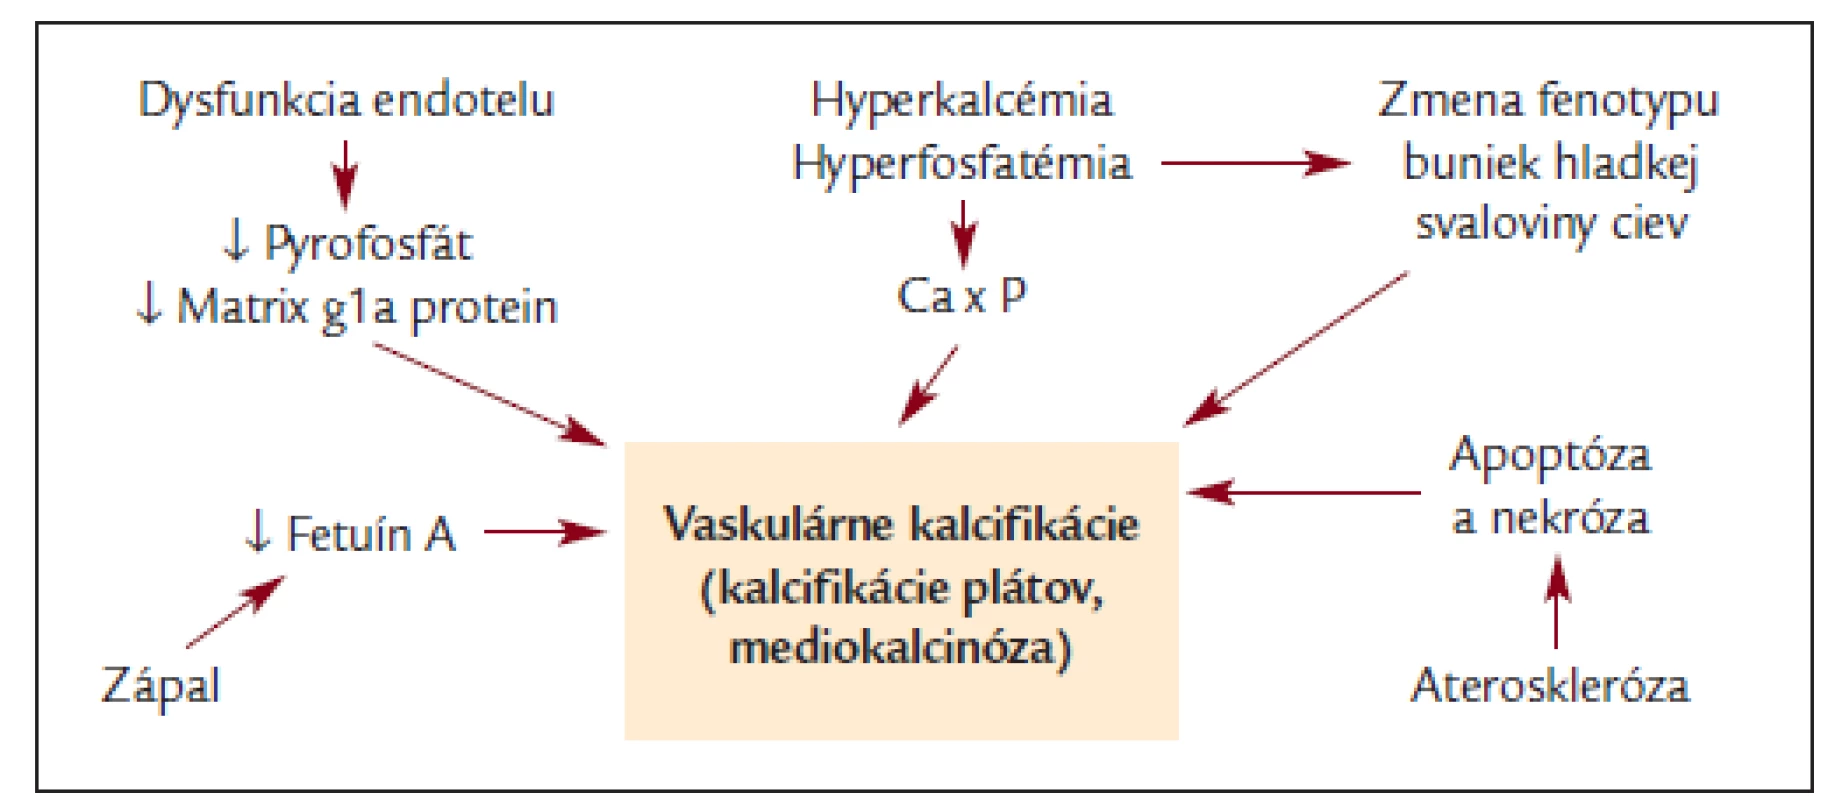 Schéma etiopatogenézie vaskulárnych kalcifikácií.
